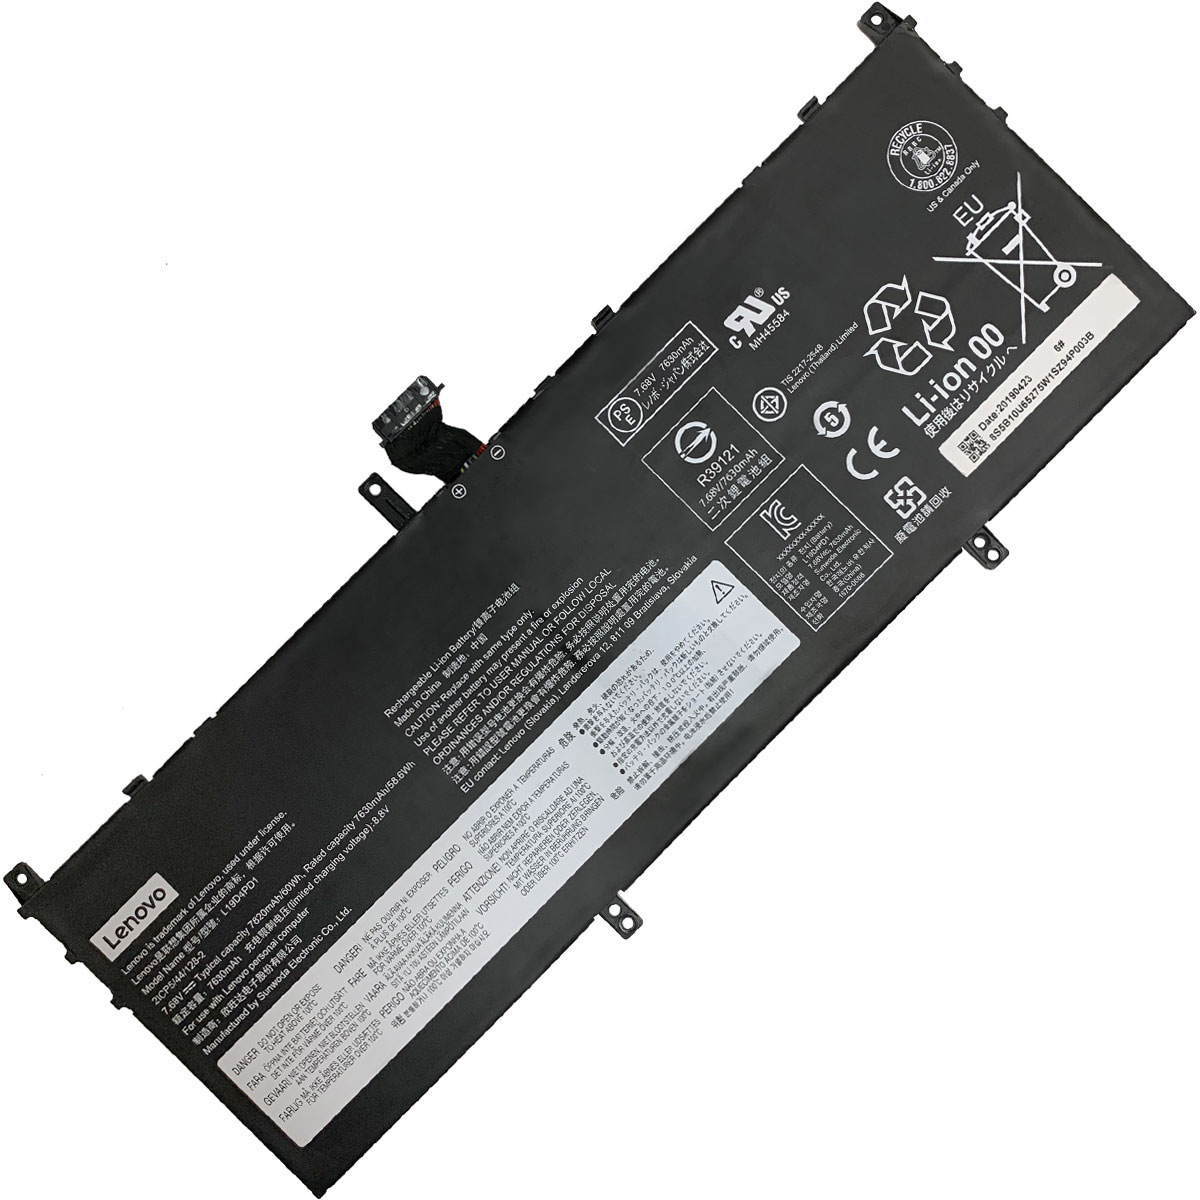 LENOVO-C640-13/L19D4PD1/L19C4PD1-Laptop Replacement Battery